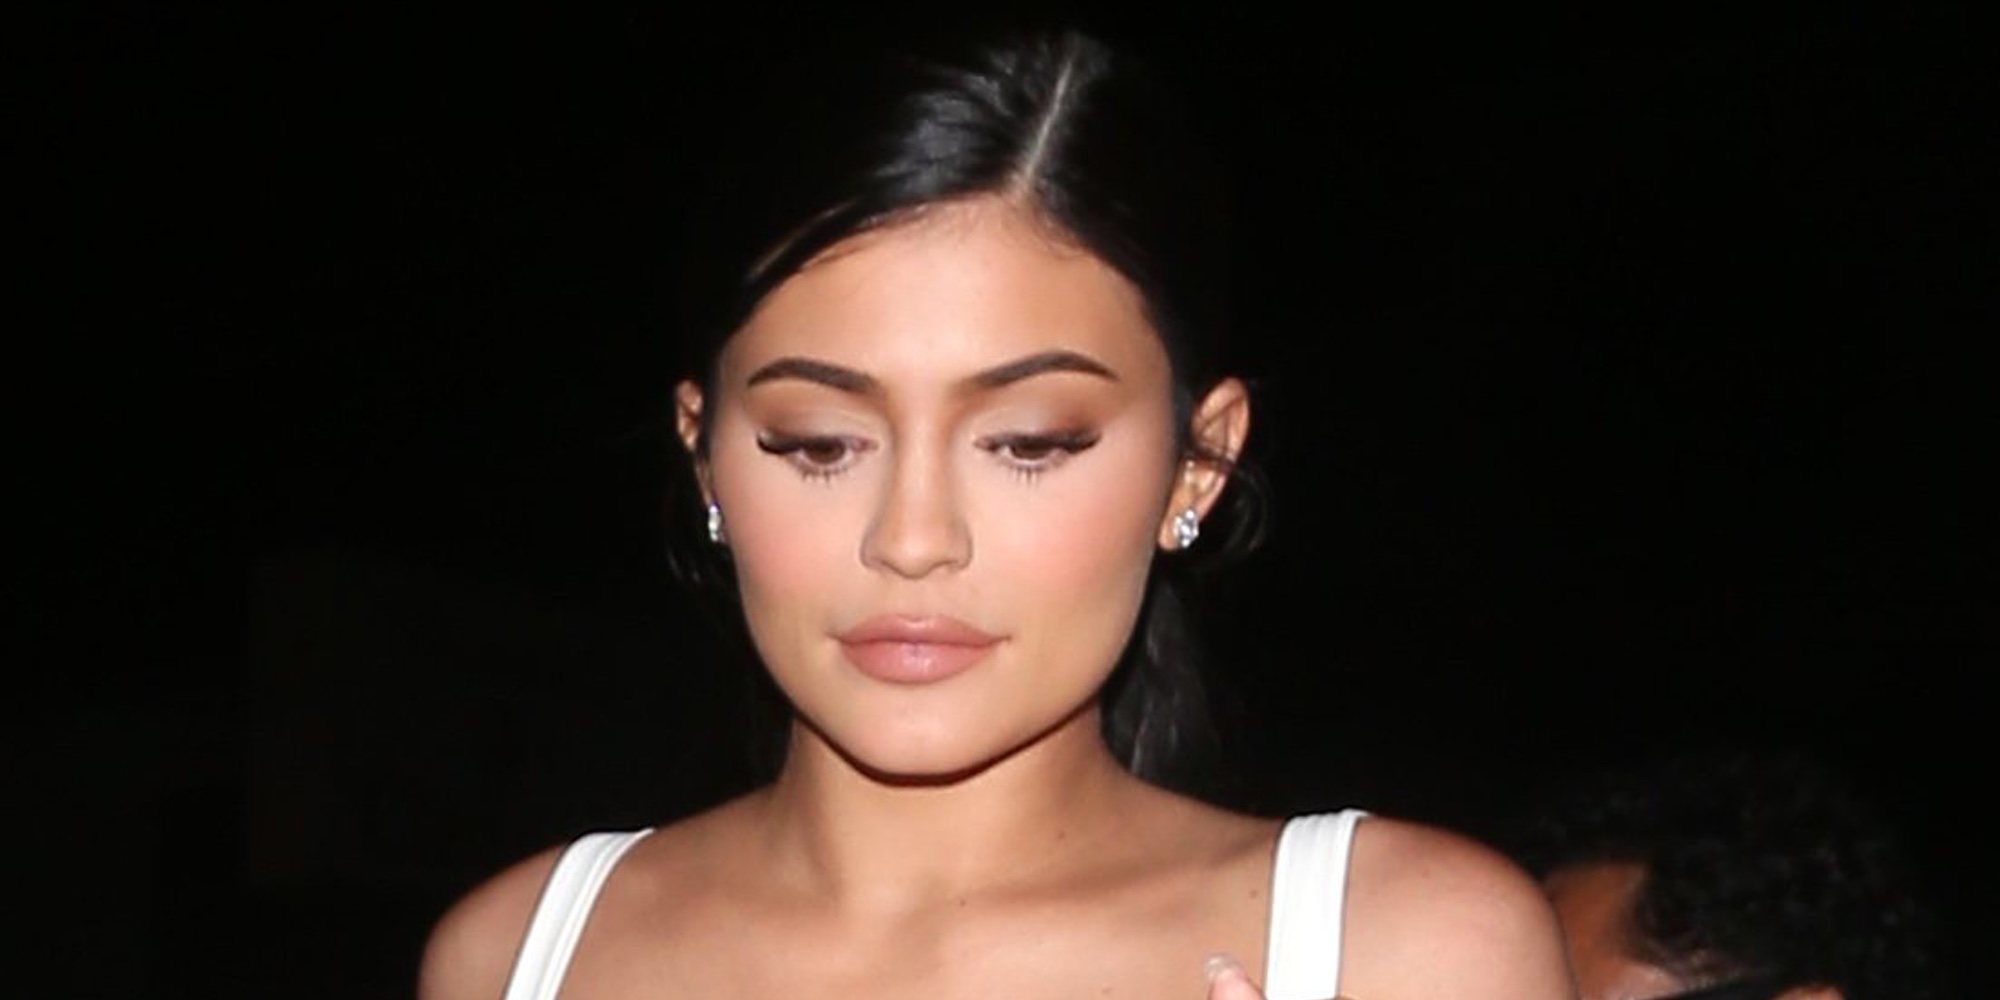 Un vídeo desata los rumores sobre un supuesto segundo embarazo de Kylie Jenner